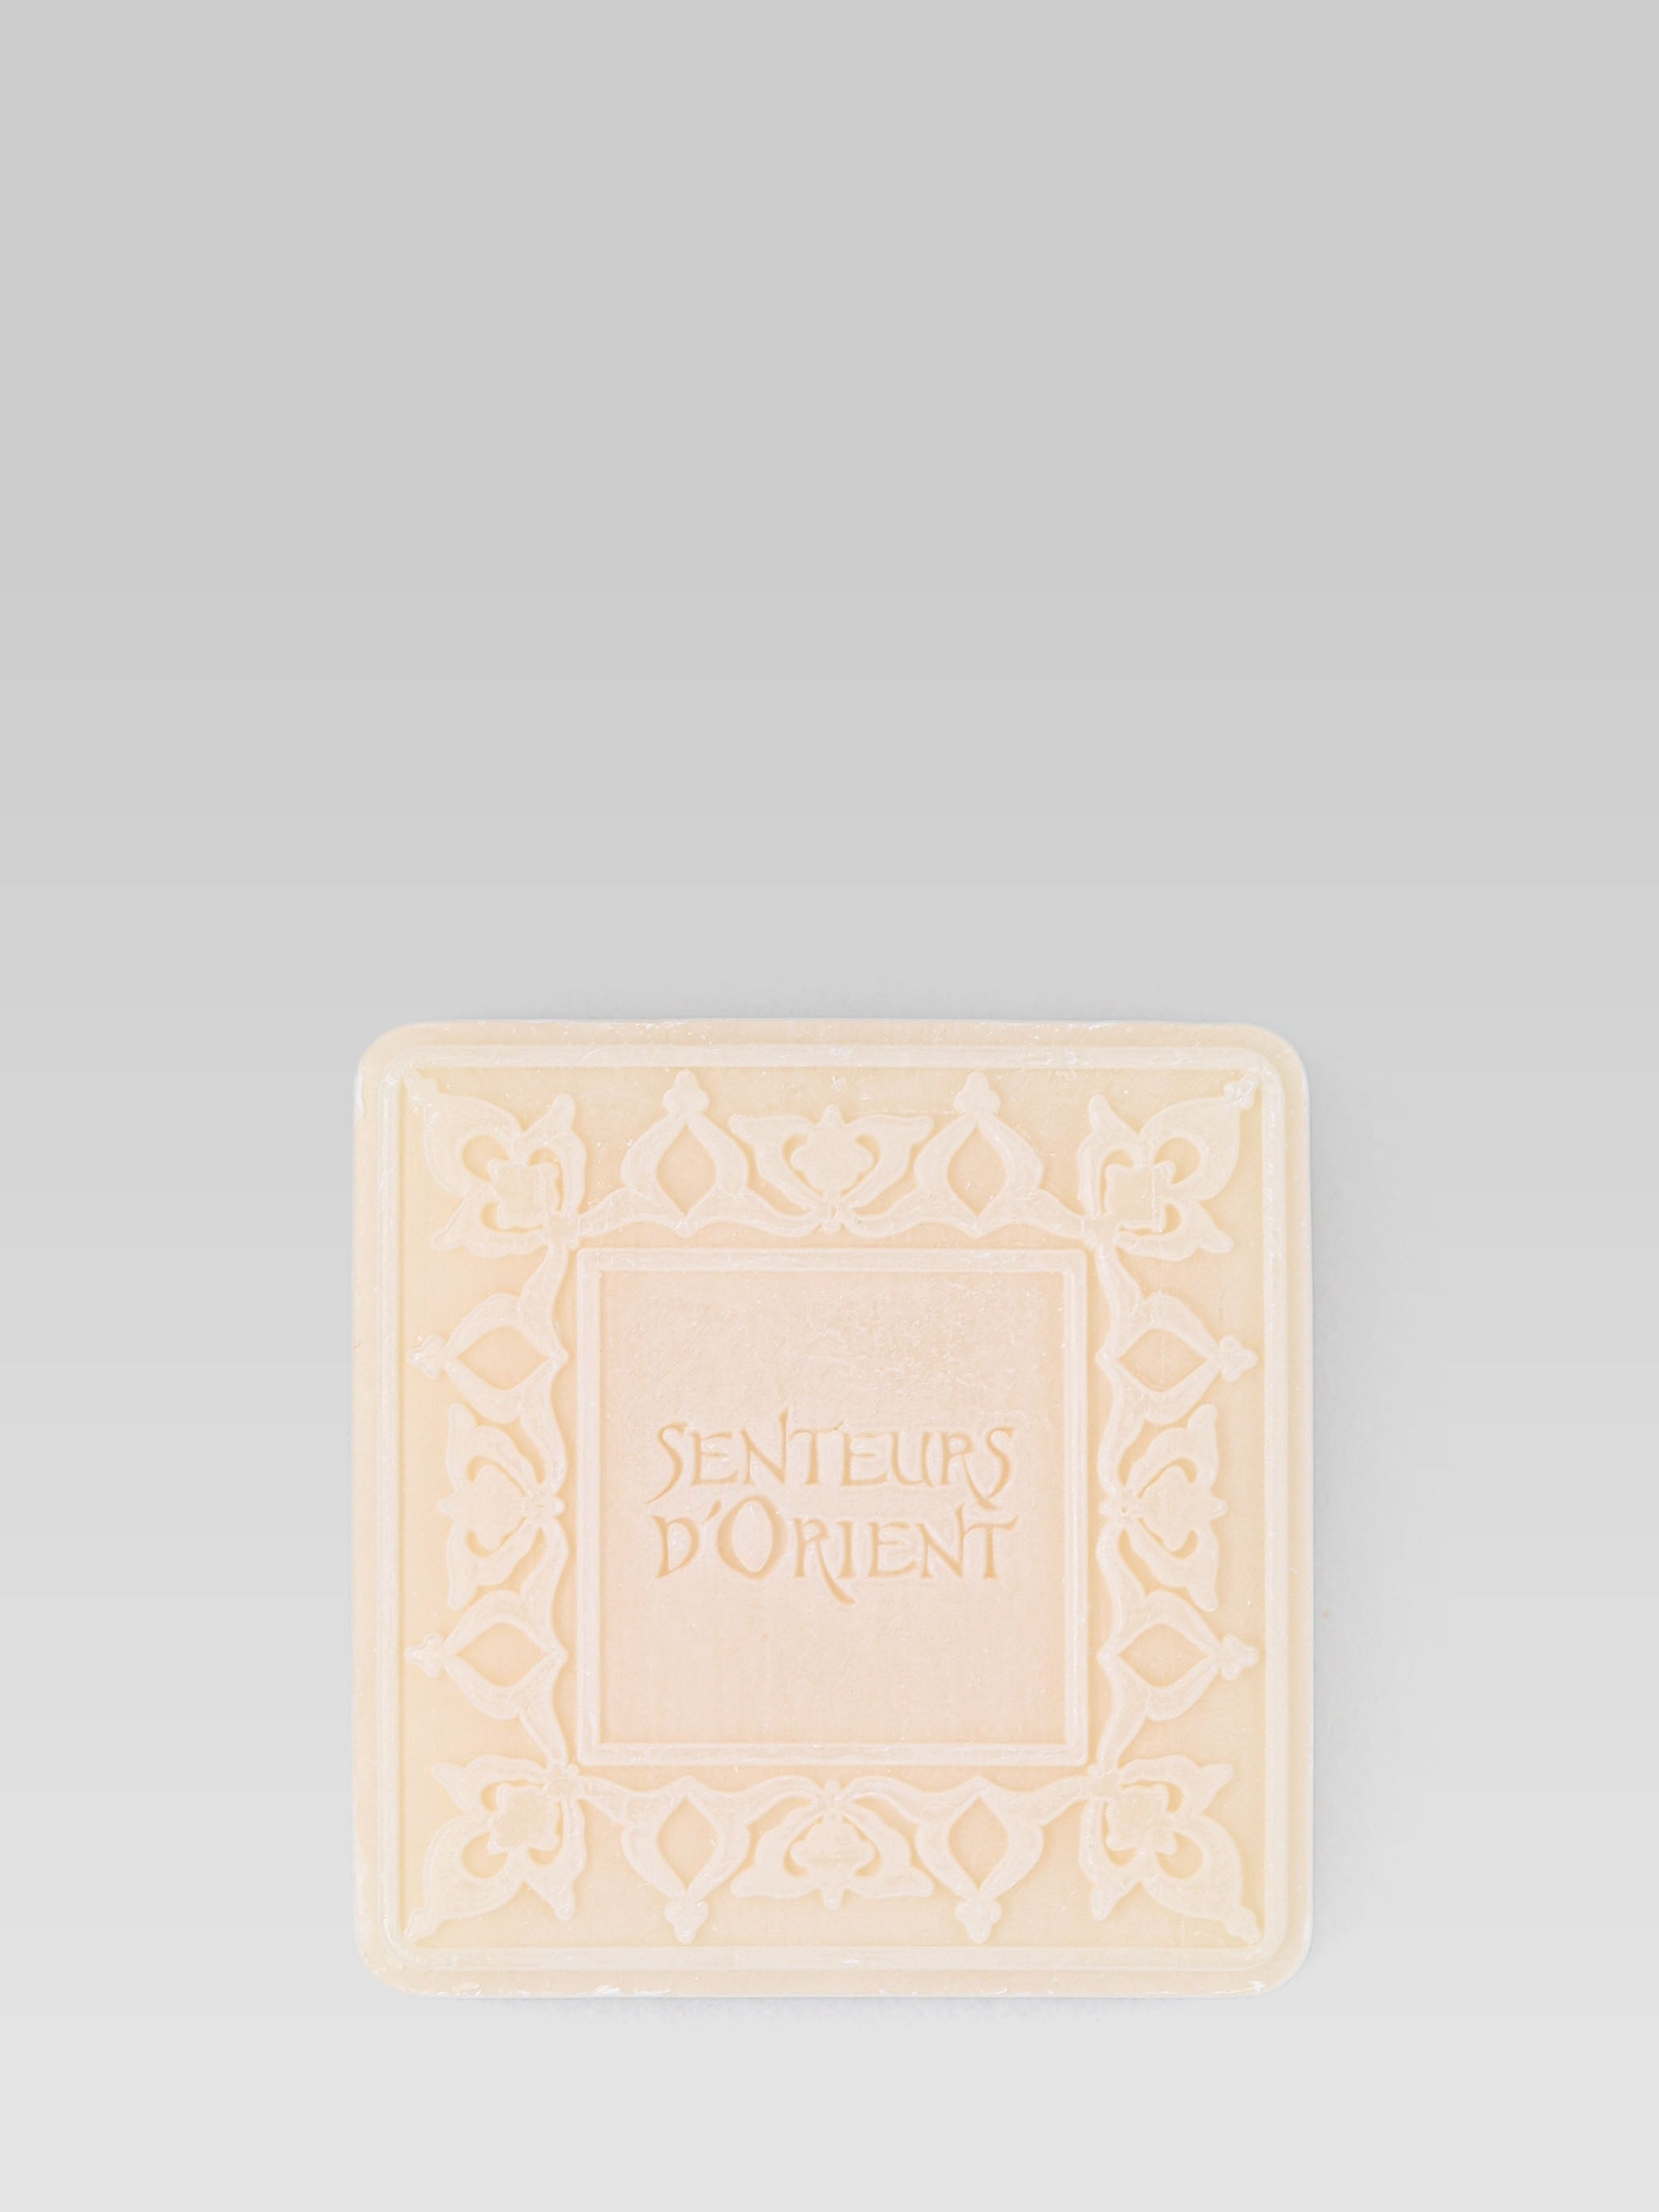 SENTEURS D’ORIENT Ma’amoul Hand Soap Honey product shot